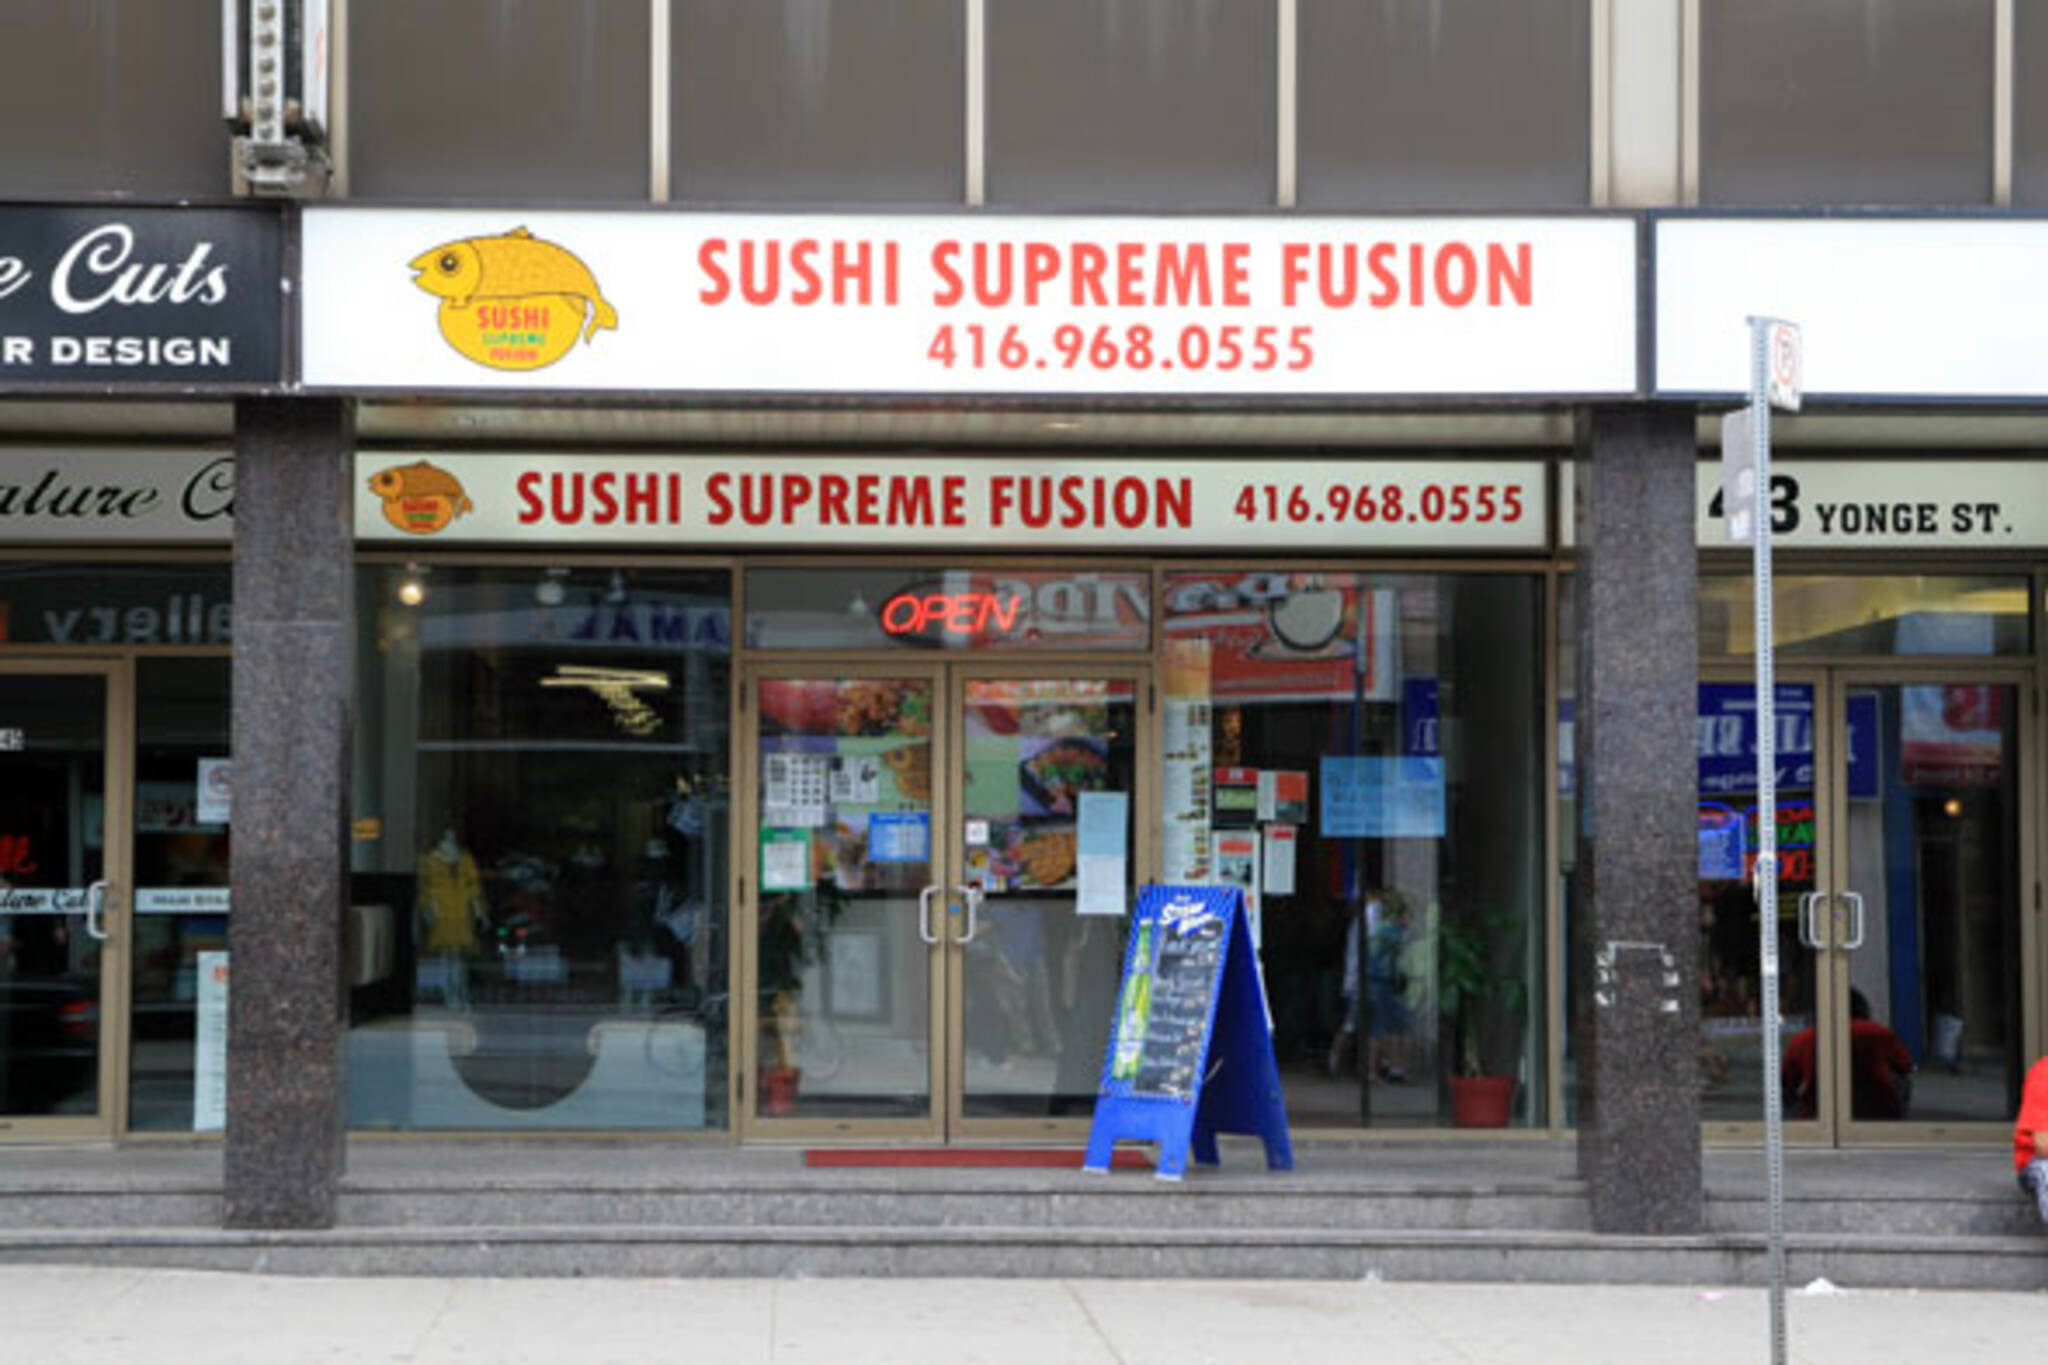 Sushi Supreme Fusion Toronto